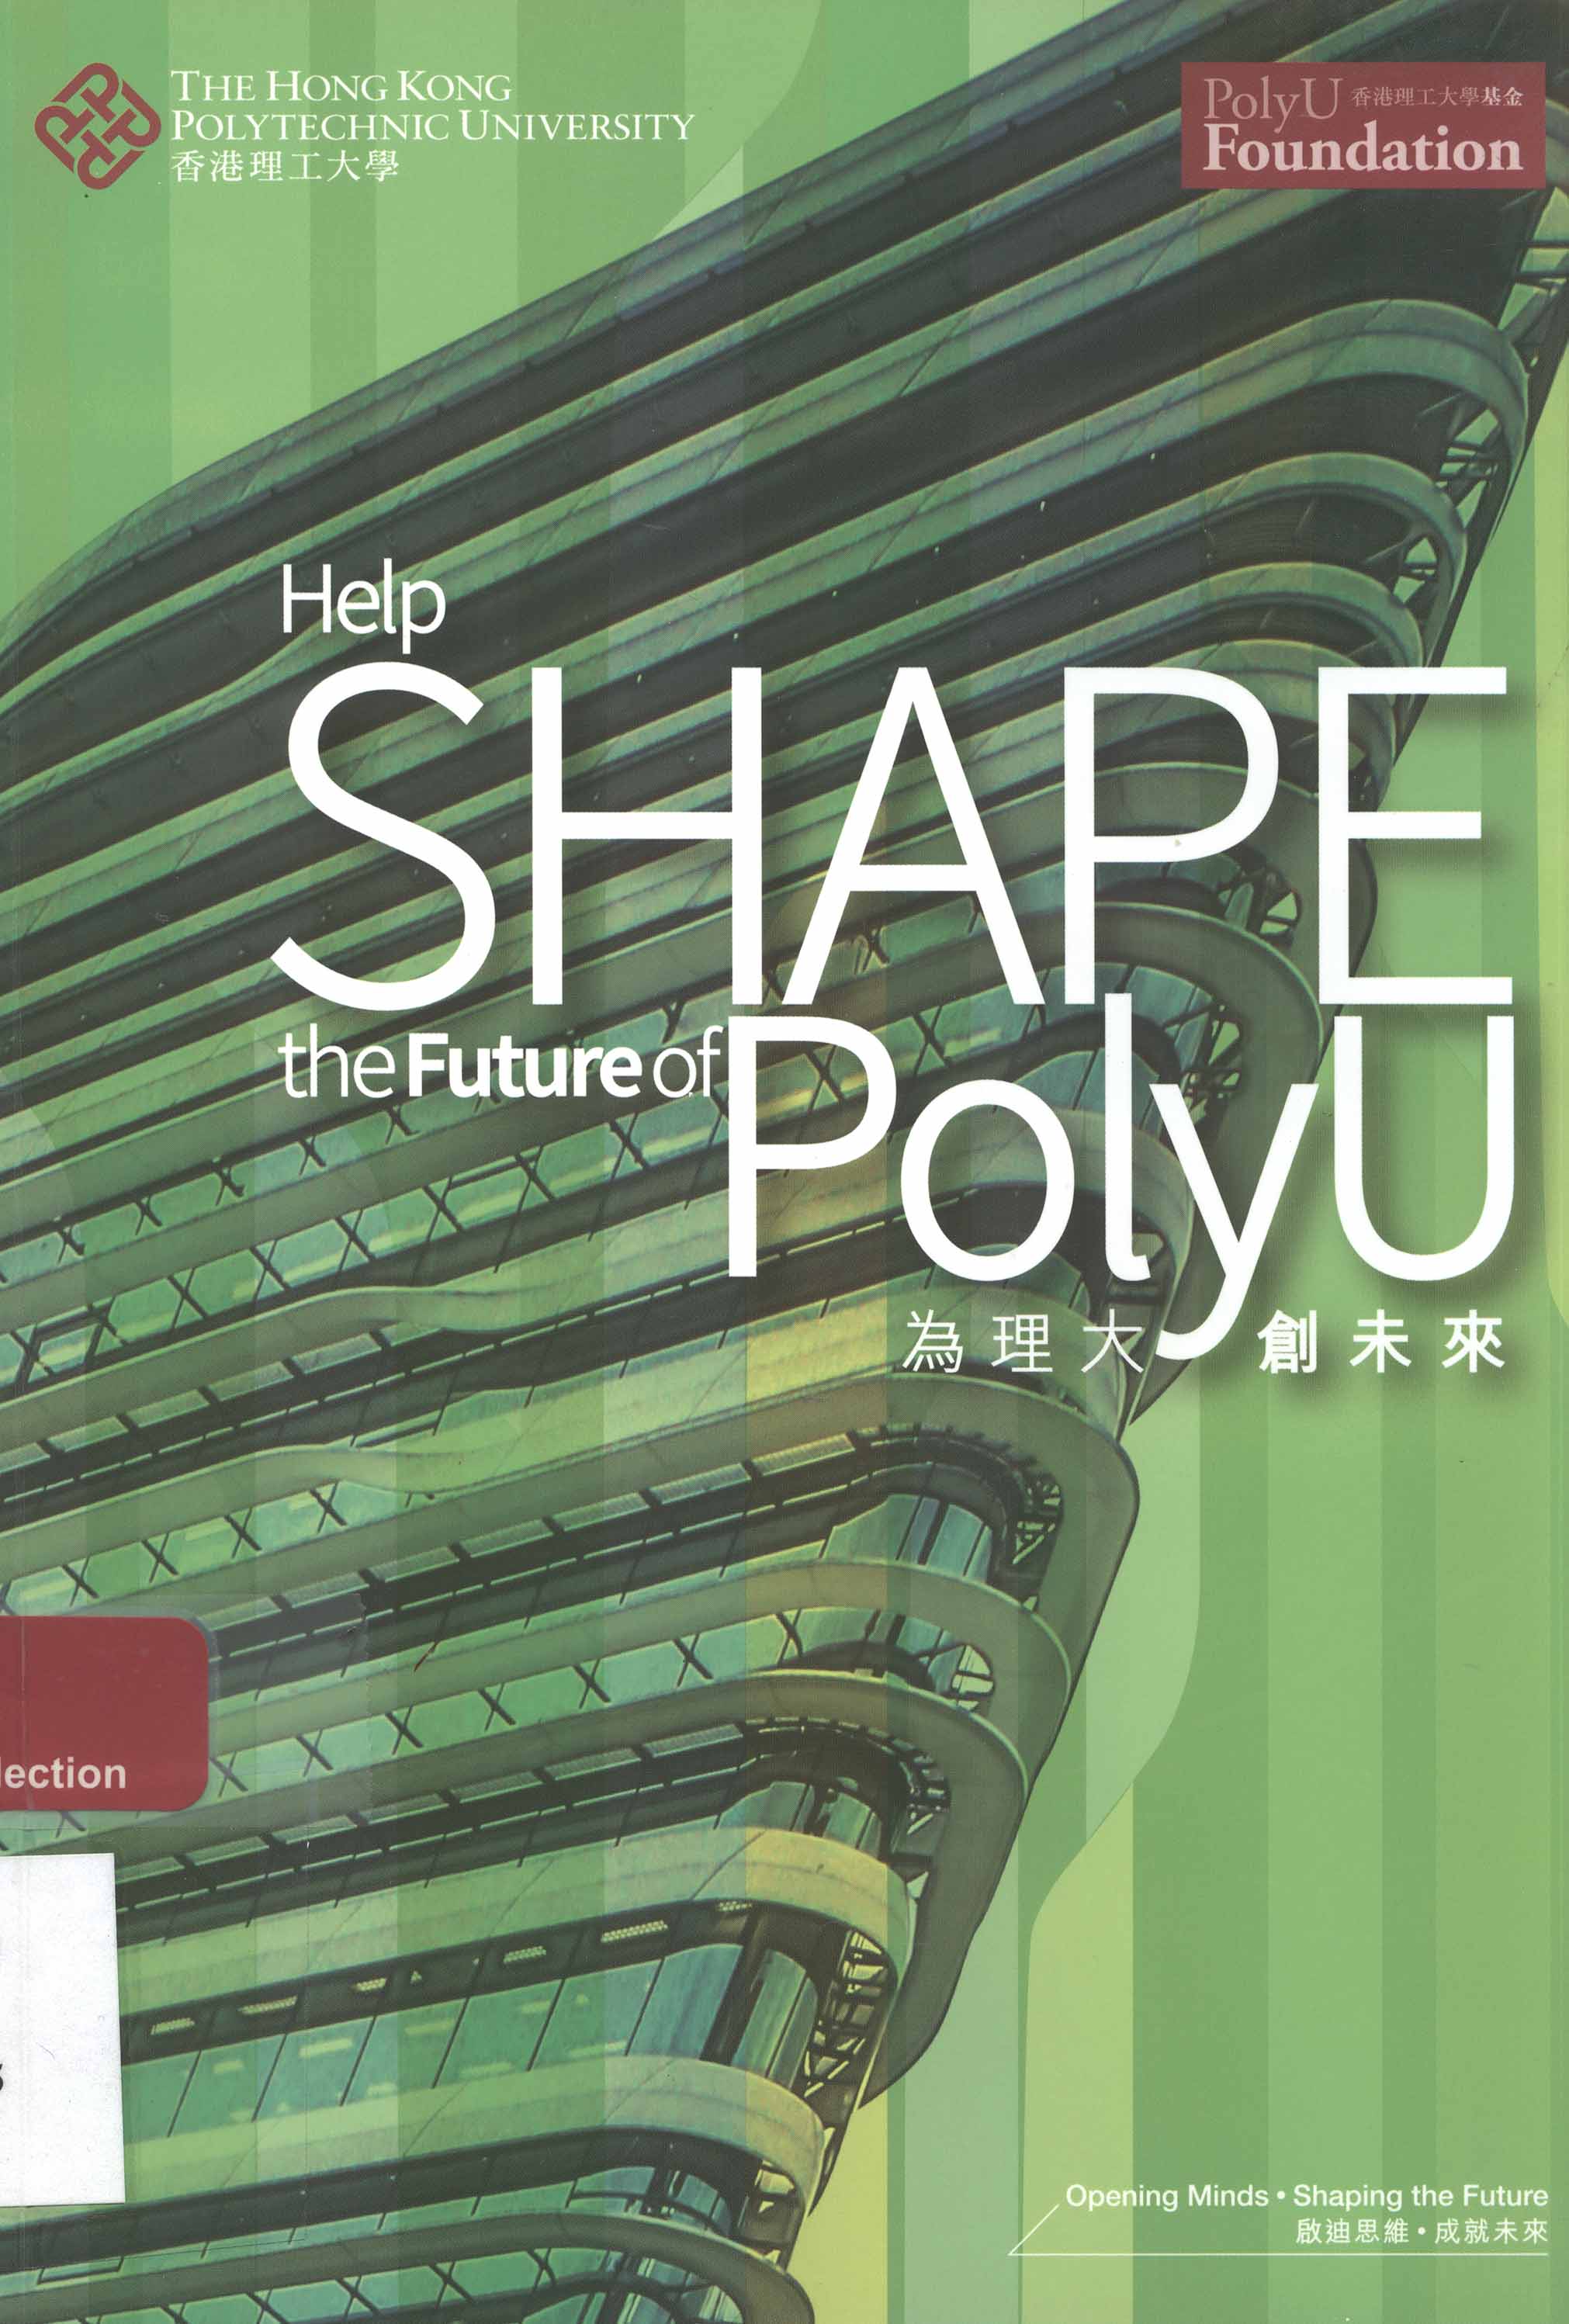 Help shape the future of PolyU